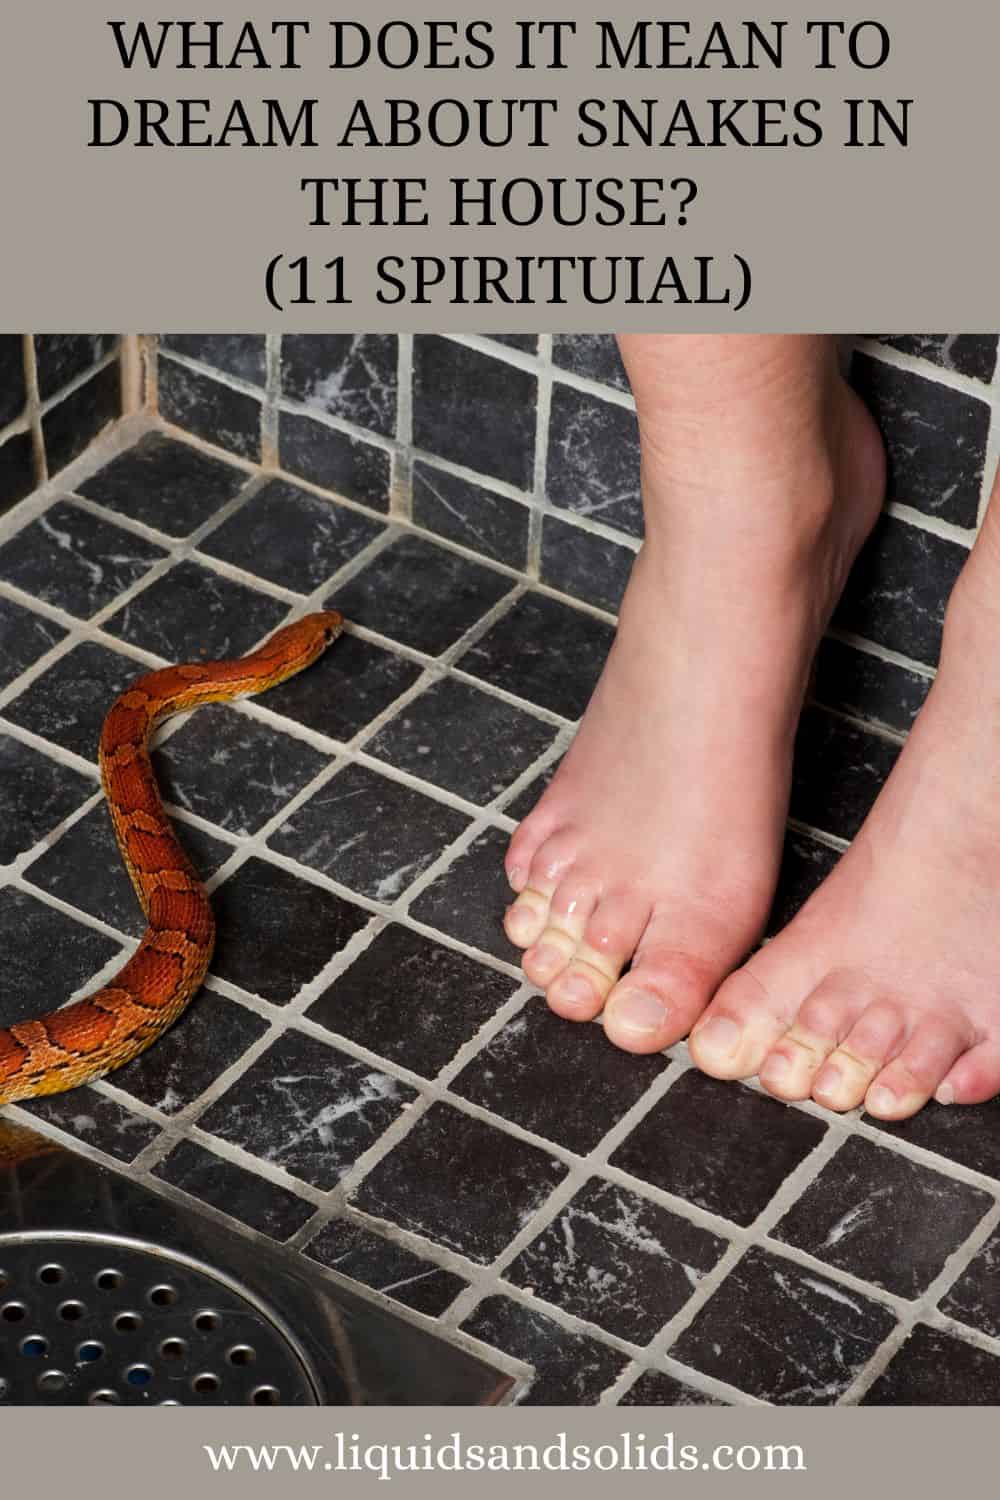  Drøm om slanger i huset? (11 spirituelle betydninger)